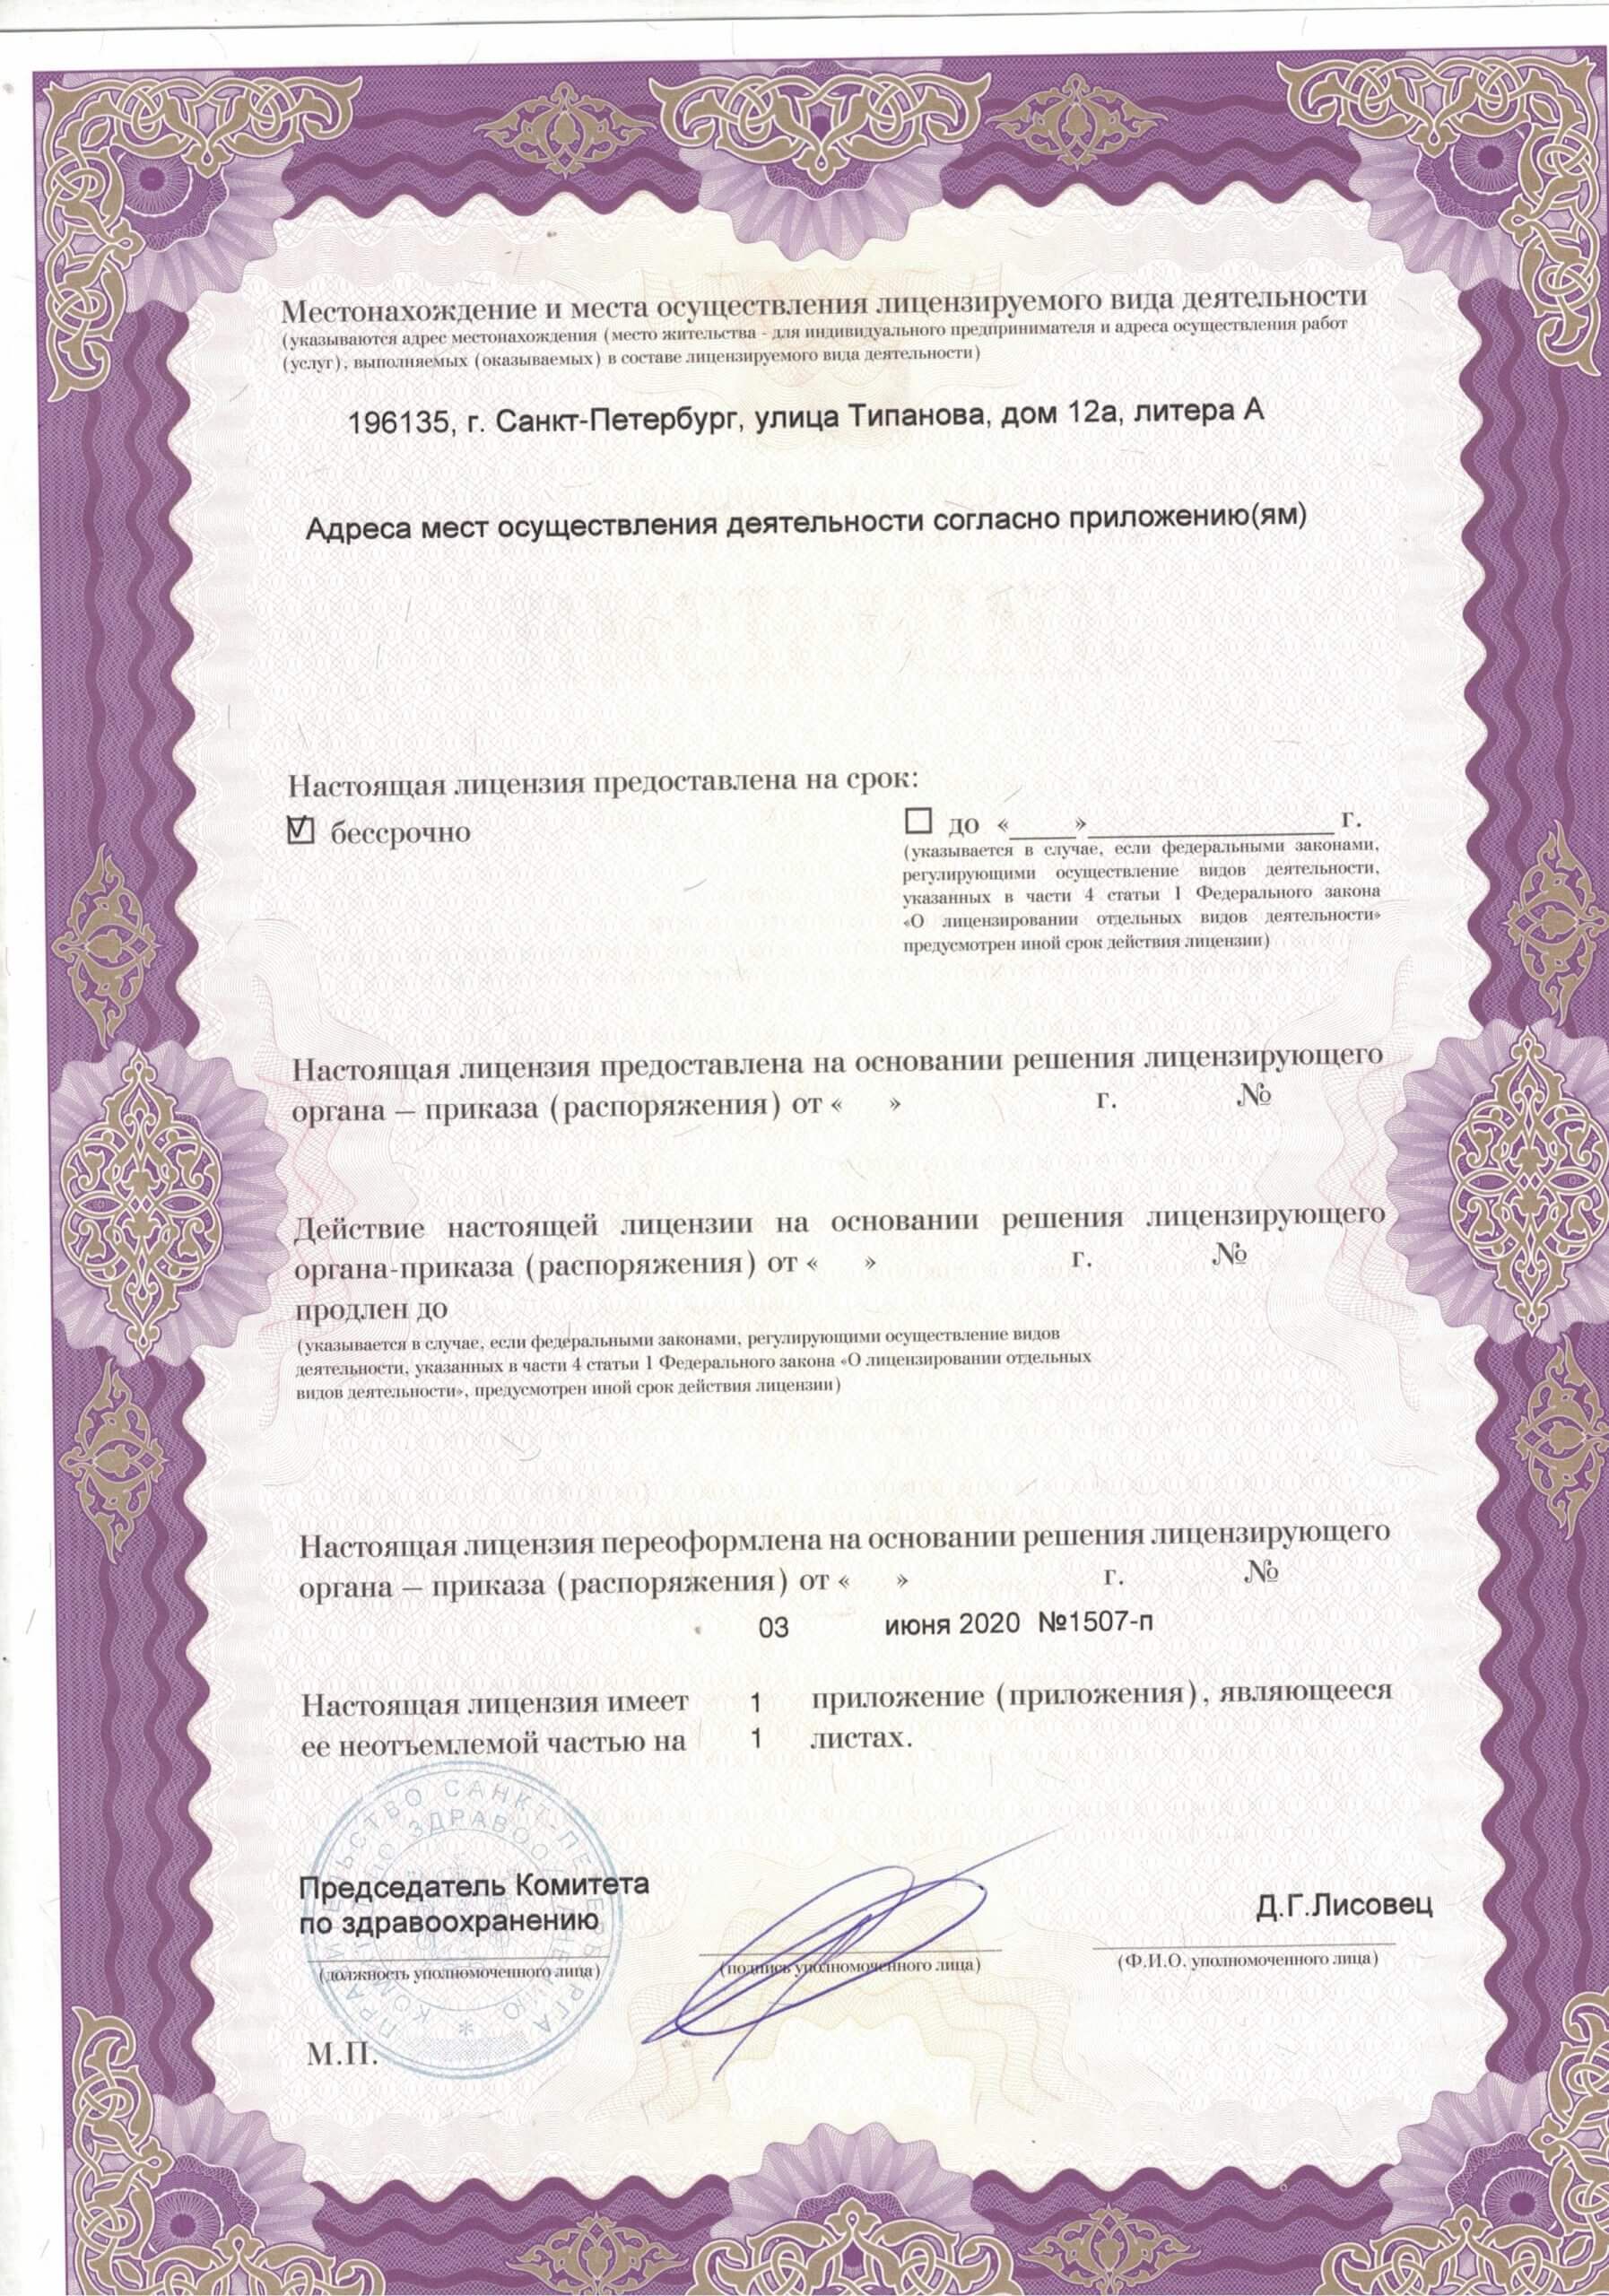 ЦМРТ Типанова лицензия №2